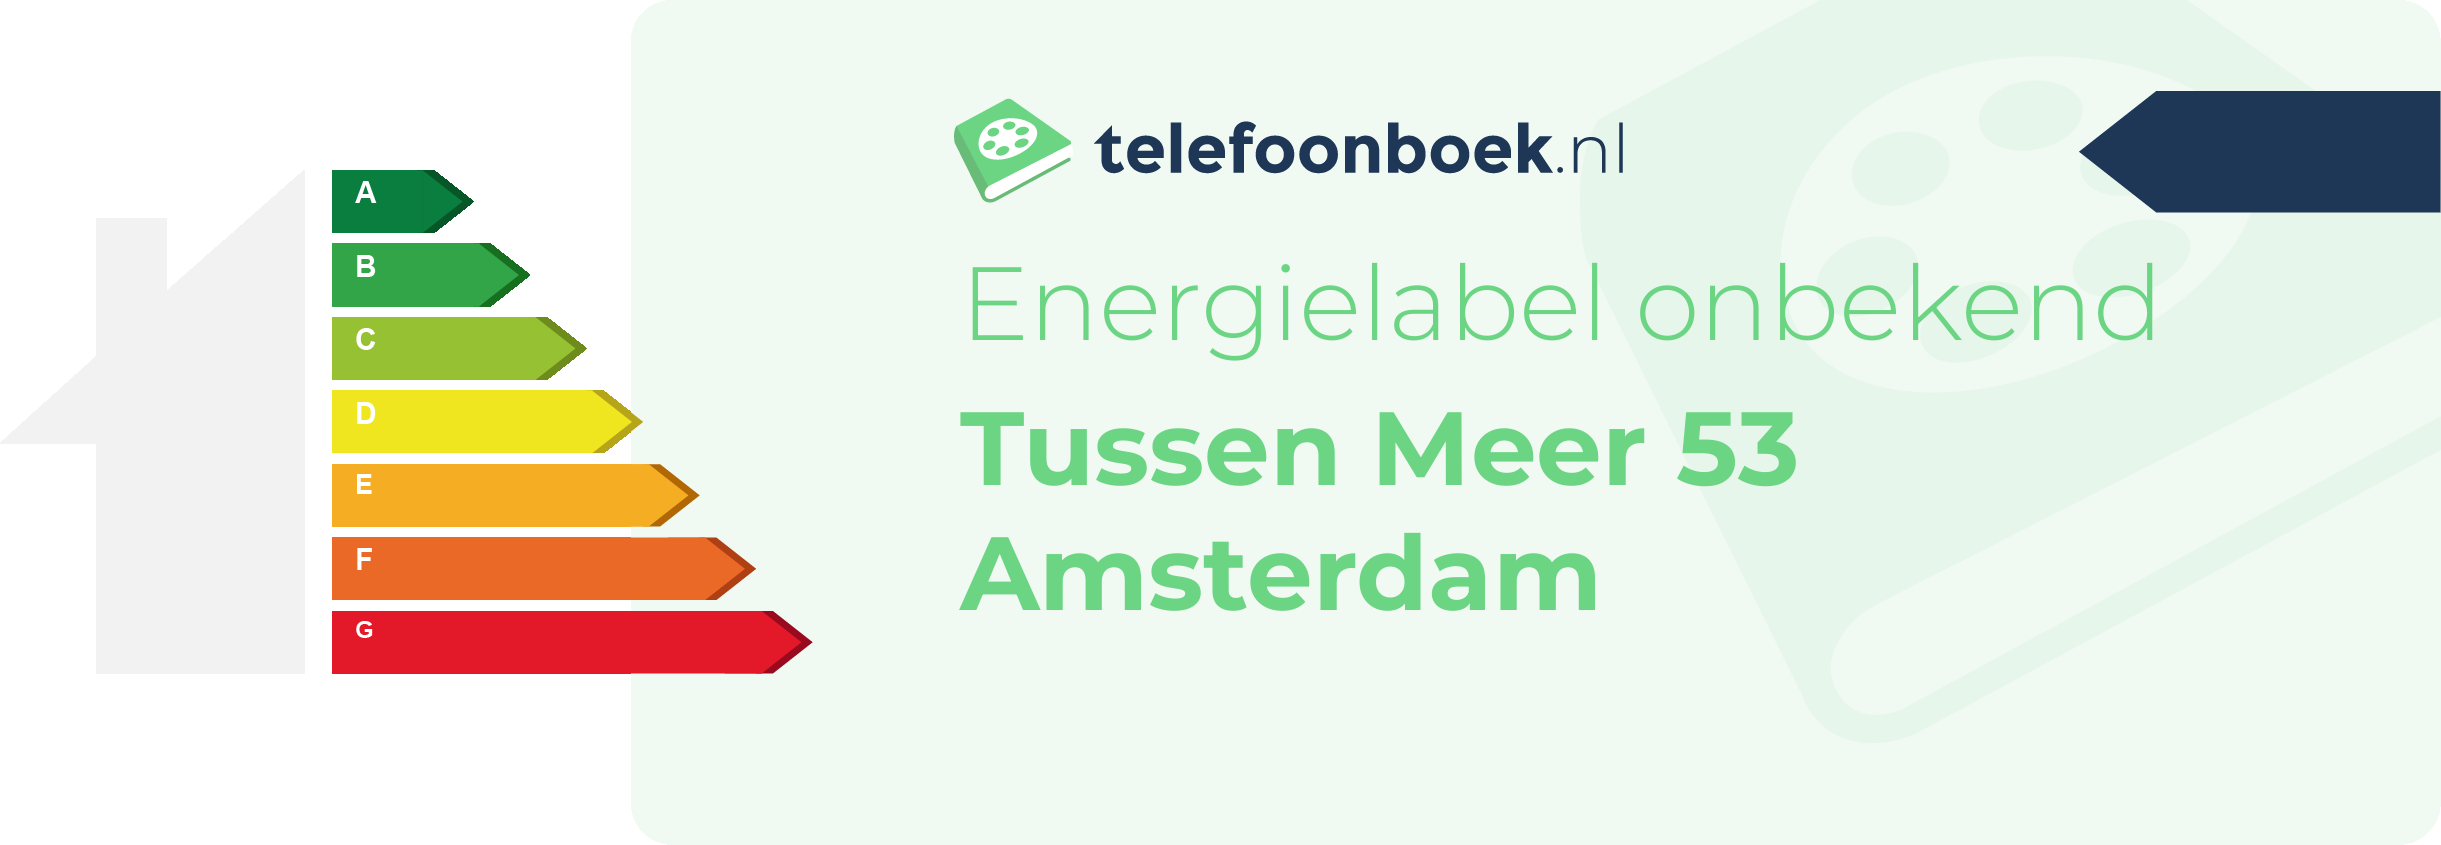 Energielabel Tussen Meer 53 Amsterdam